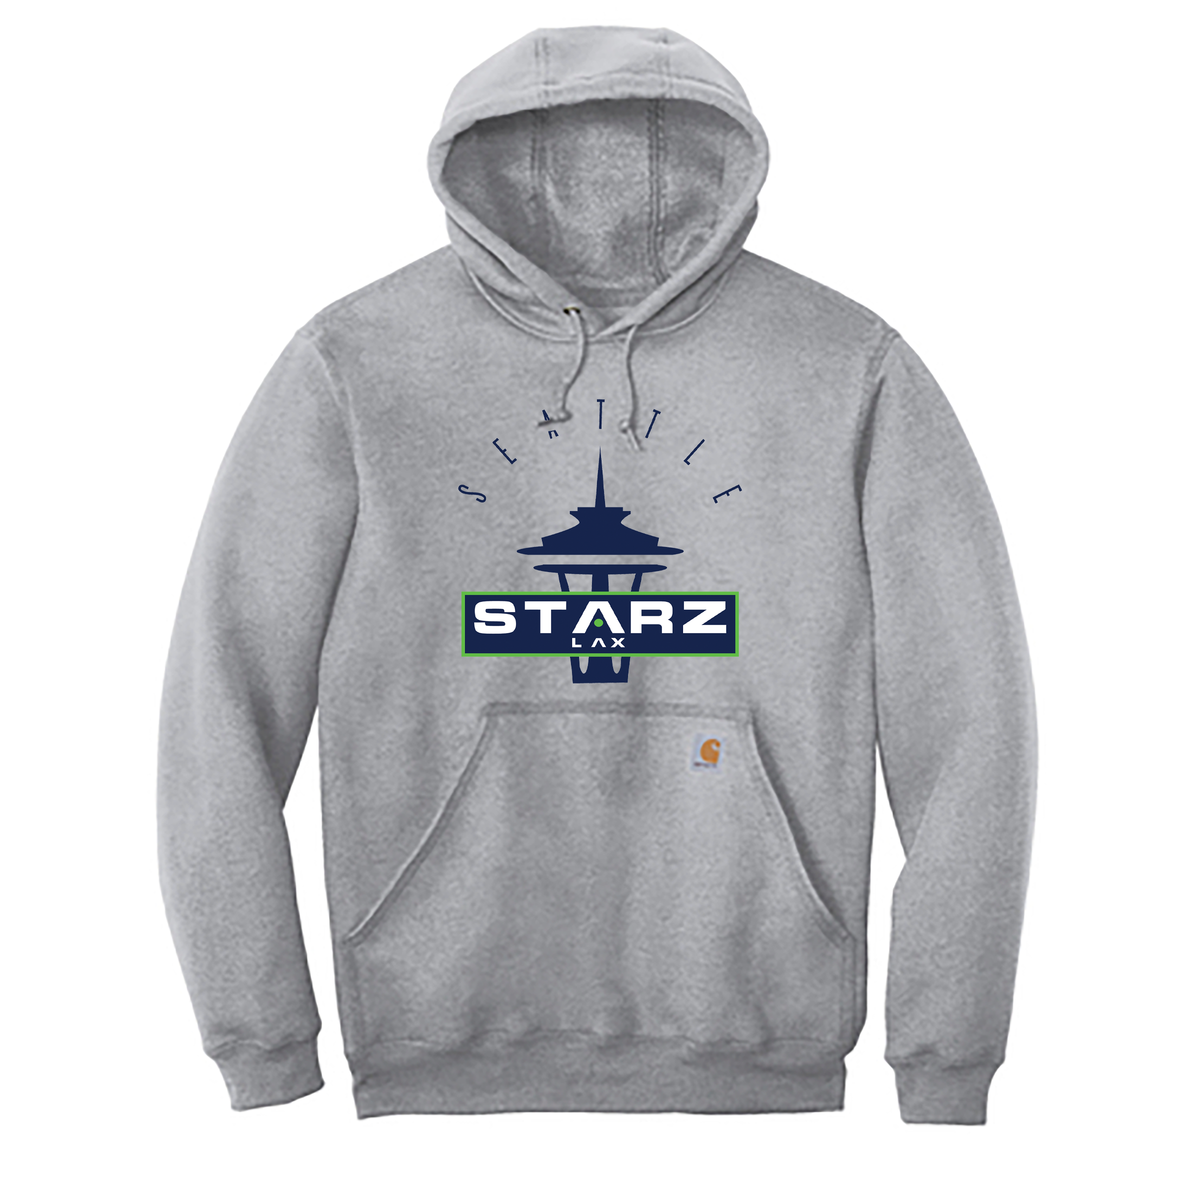 Seattle Starz Lacrosse Club Carhartt Midweight Hooded Sweatshirt